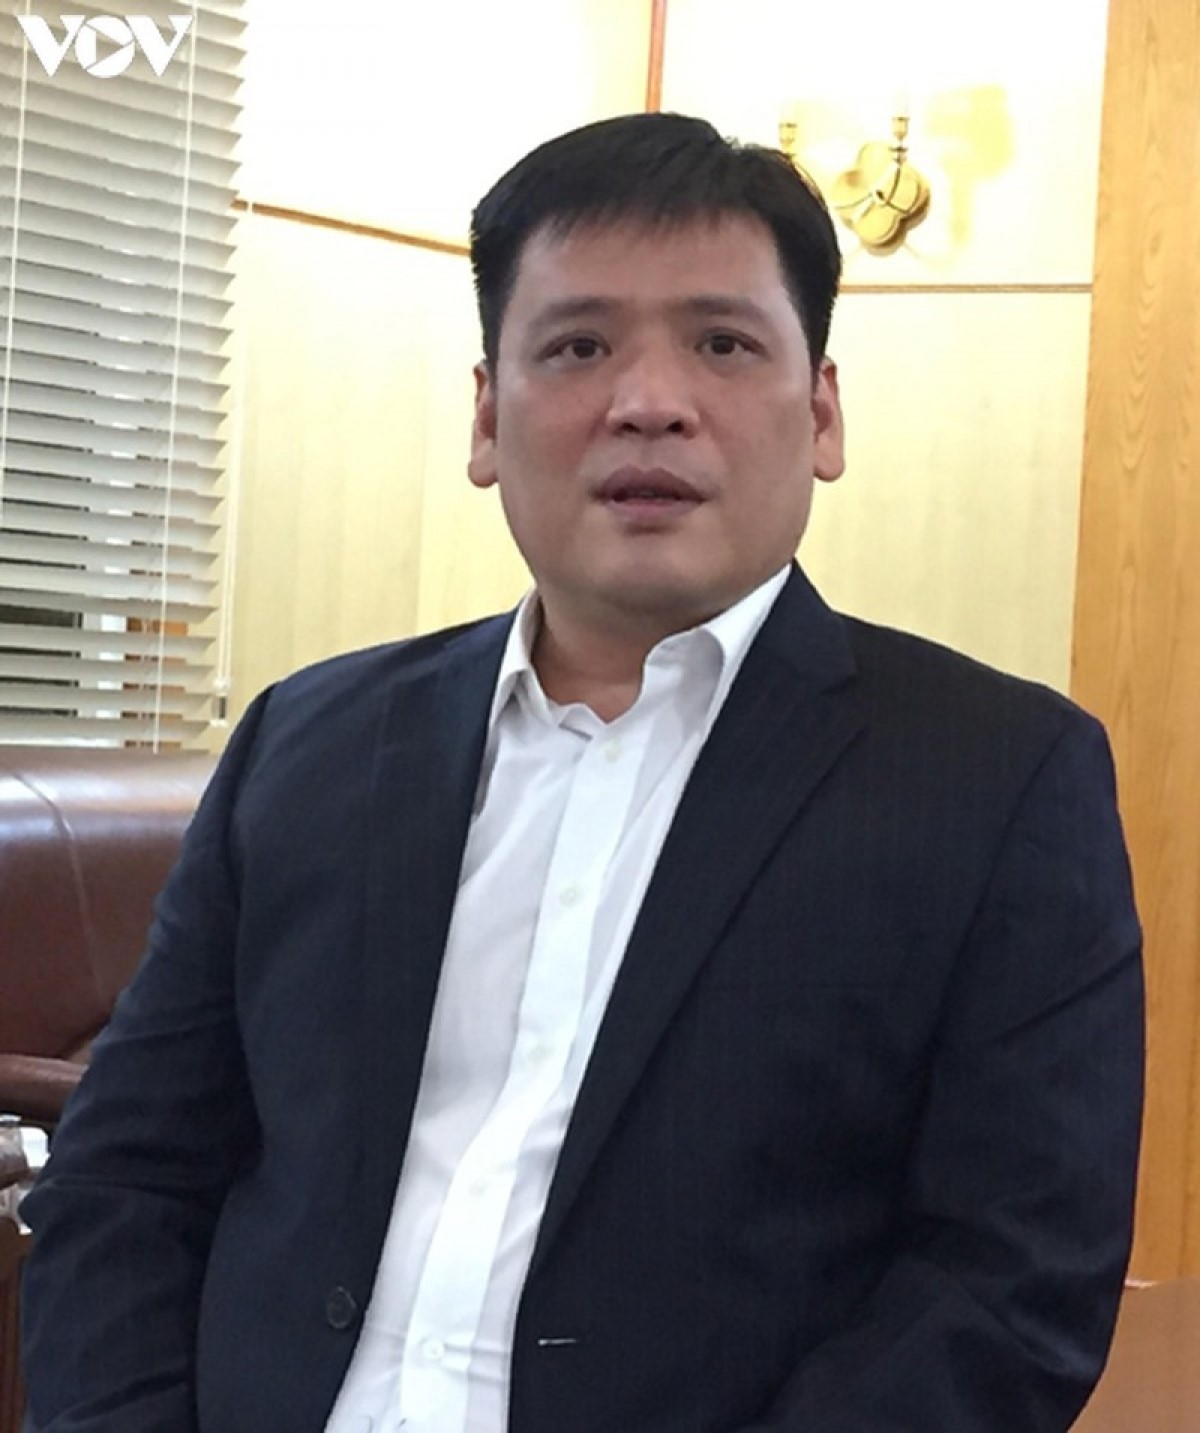 Ông Nguyễn Thanh Bình - Phó Vụ trưởng Vụ Tổ chức Điều lệ, Ban Tổ chức Trung ương